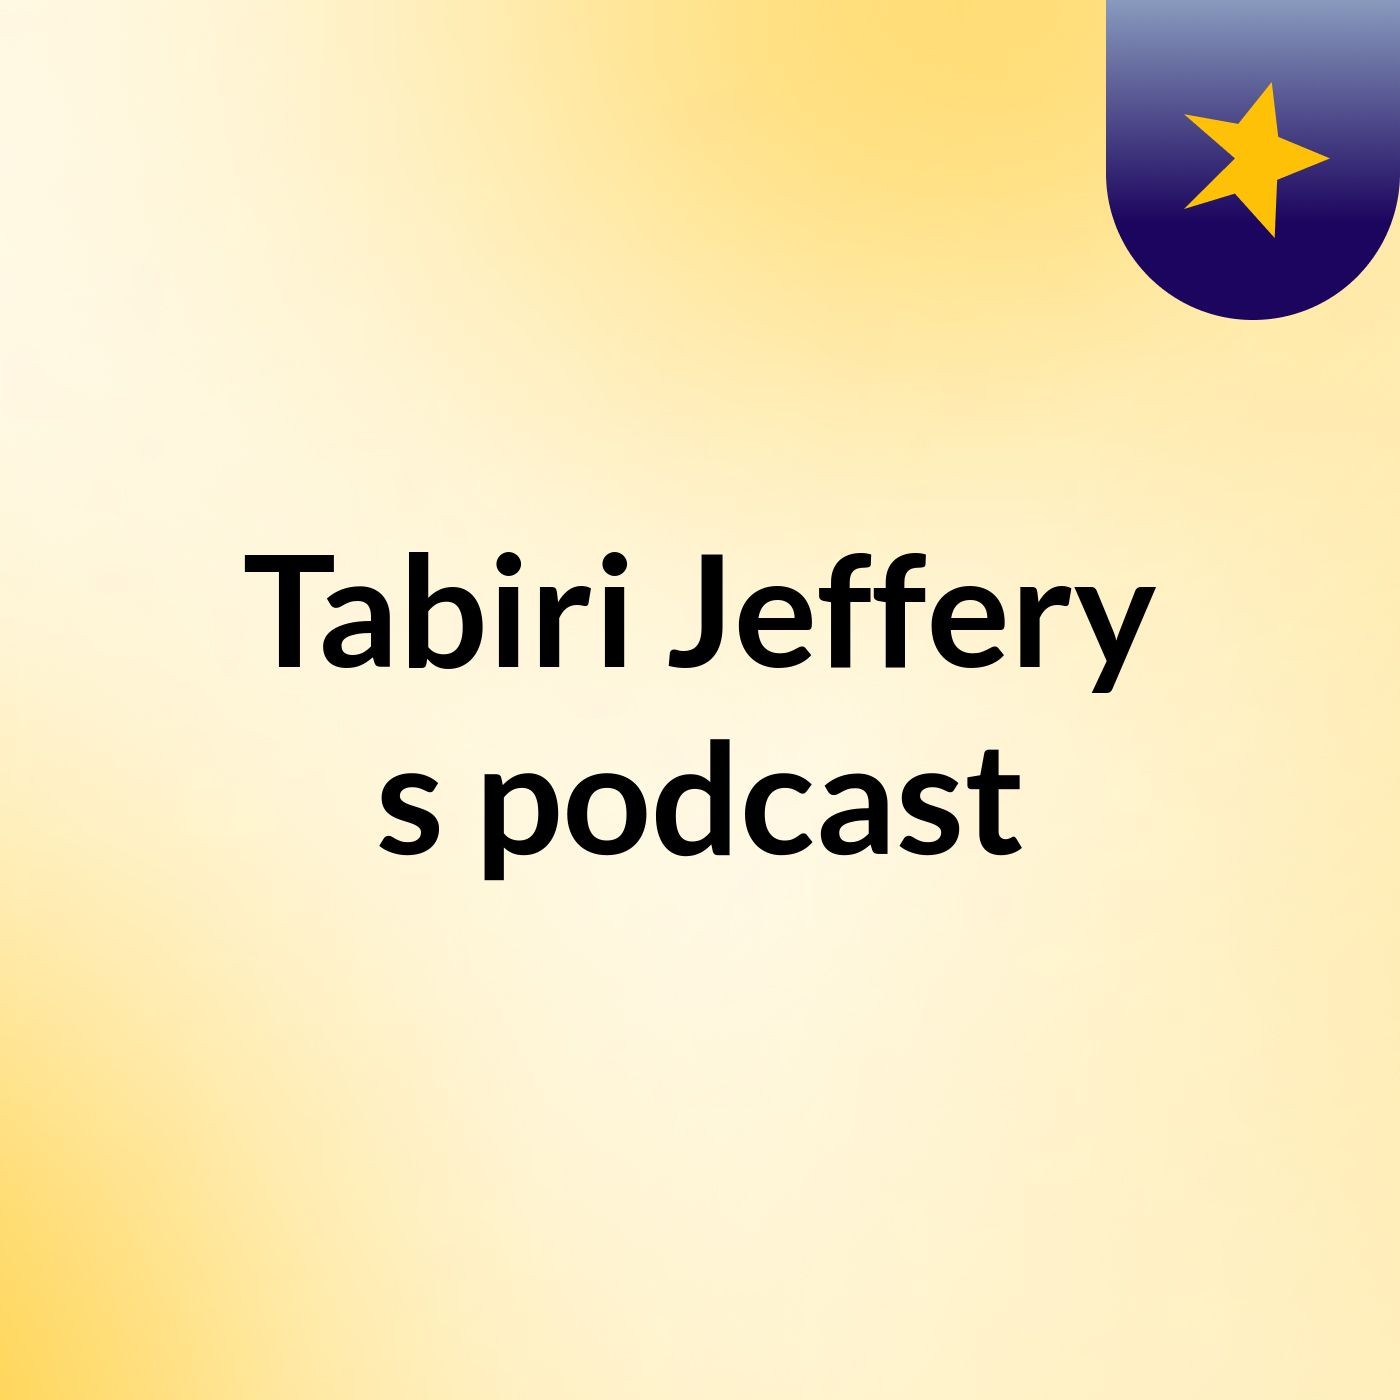 Tabiri Jeffery's podcast